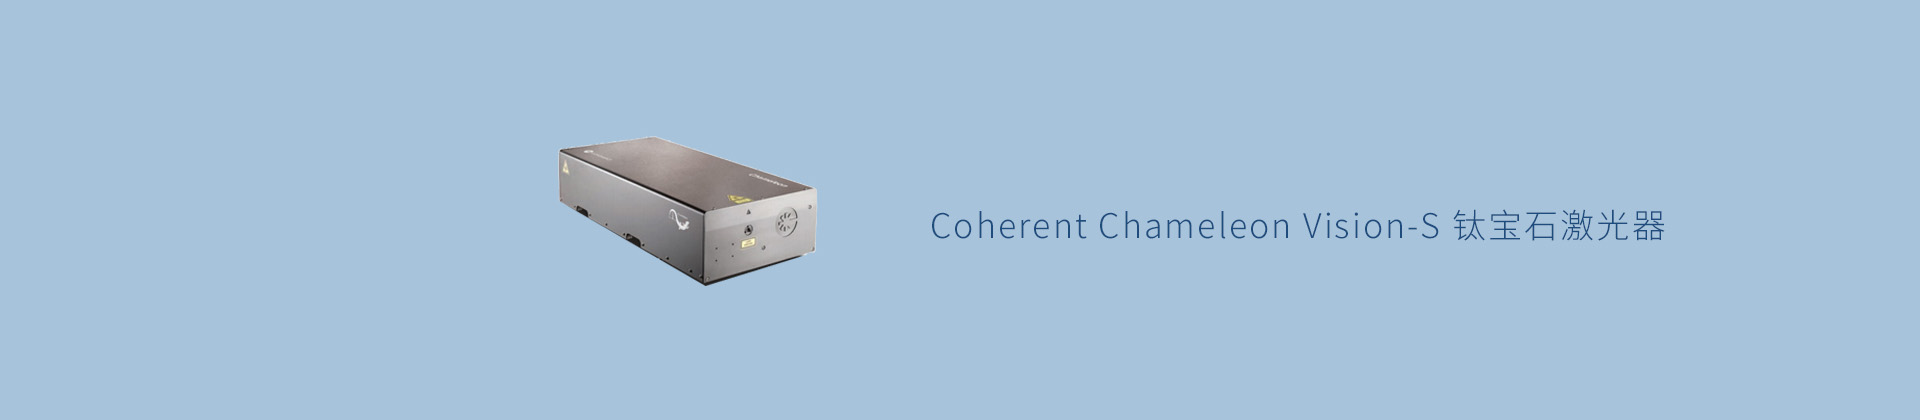 Coherent Chameleon Vision-S 钛宝石激光器